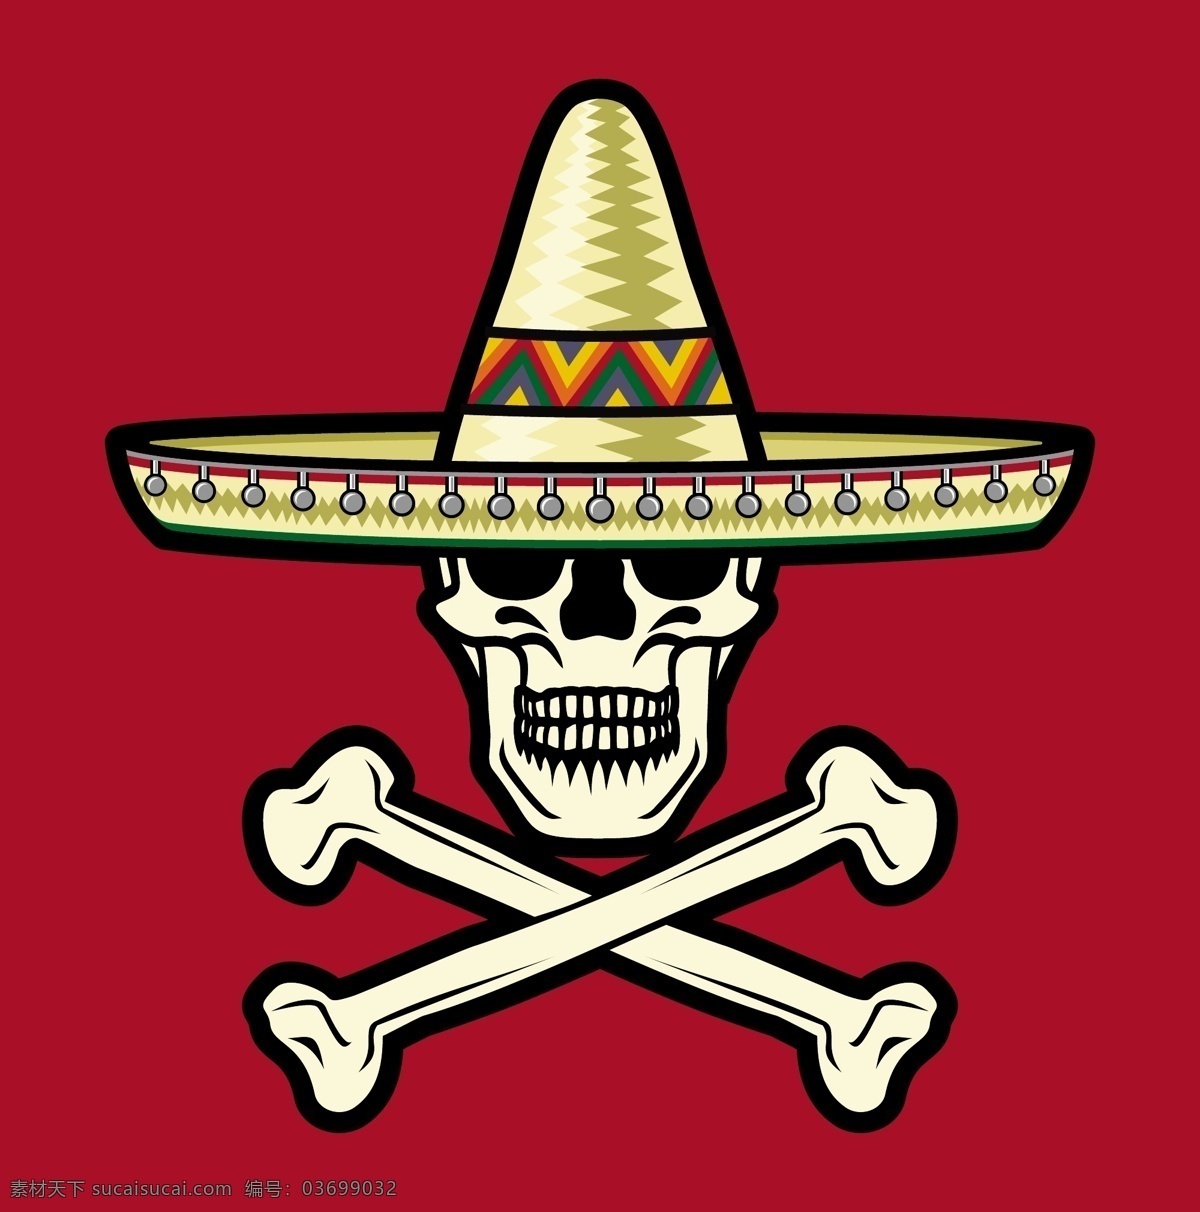 戴帽子的骷髅 帽子 骷髅 墨西哥 墨西哥国旗 矢量图案 边框底纹 背景图案 生活百科 矢量素材 棕色